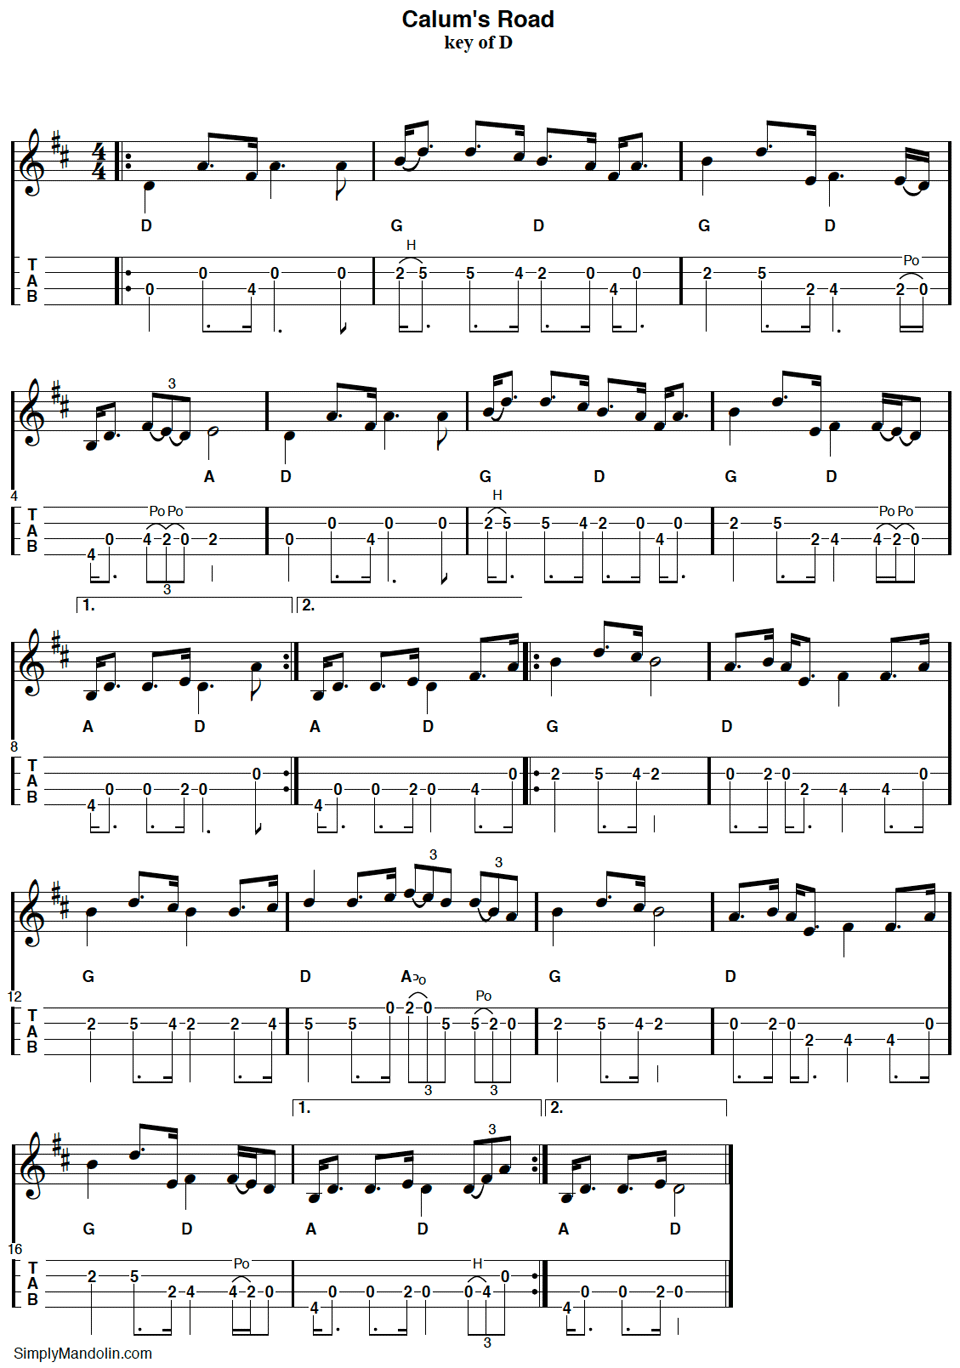 Mandolin tablature for the tune Calum's Road